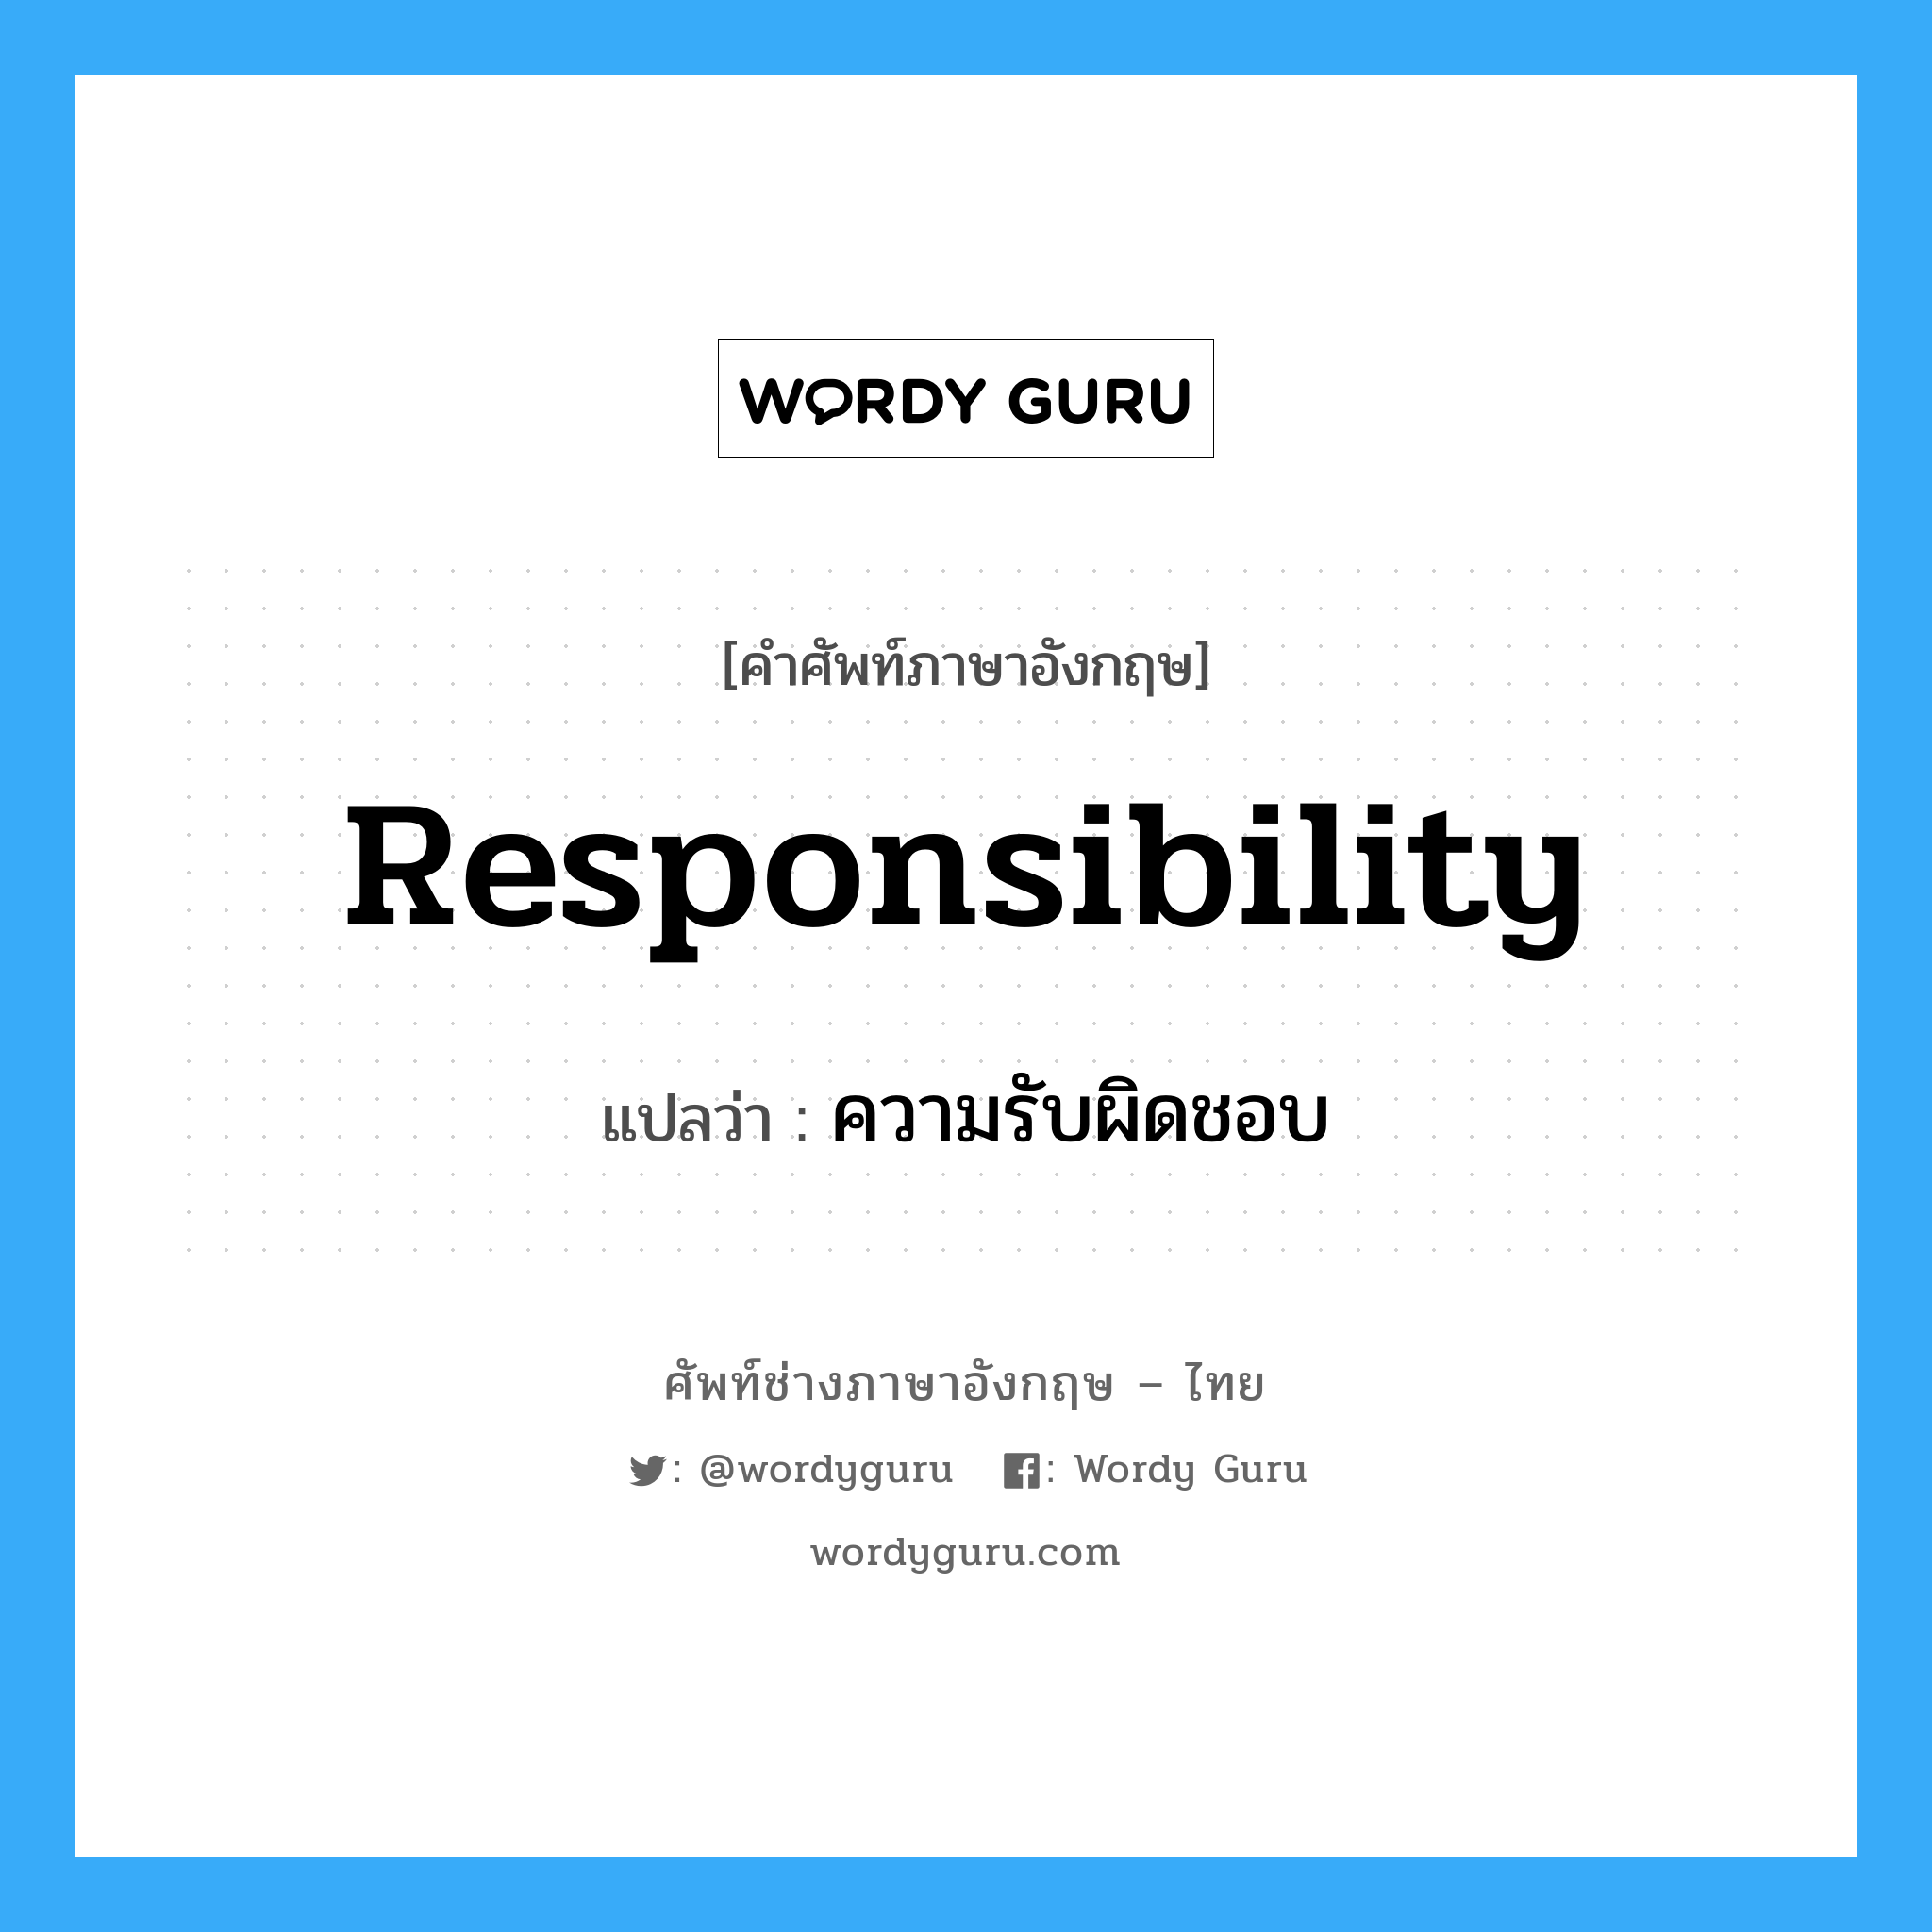 ความรับผิดชอบ ภาษาอังกฤษ?, คำศัพท์ช่างภาษาอังกฤษ - ไทย ความรับผิดชอบ คำศัพท์ภาษาอังกฤษ ความรับผิดชอบ แปลว่า responsibility